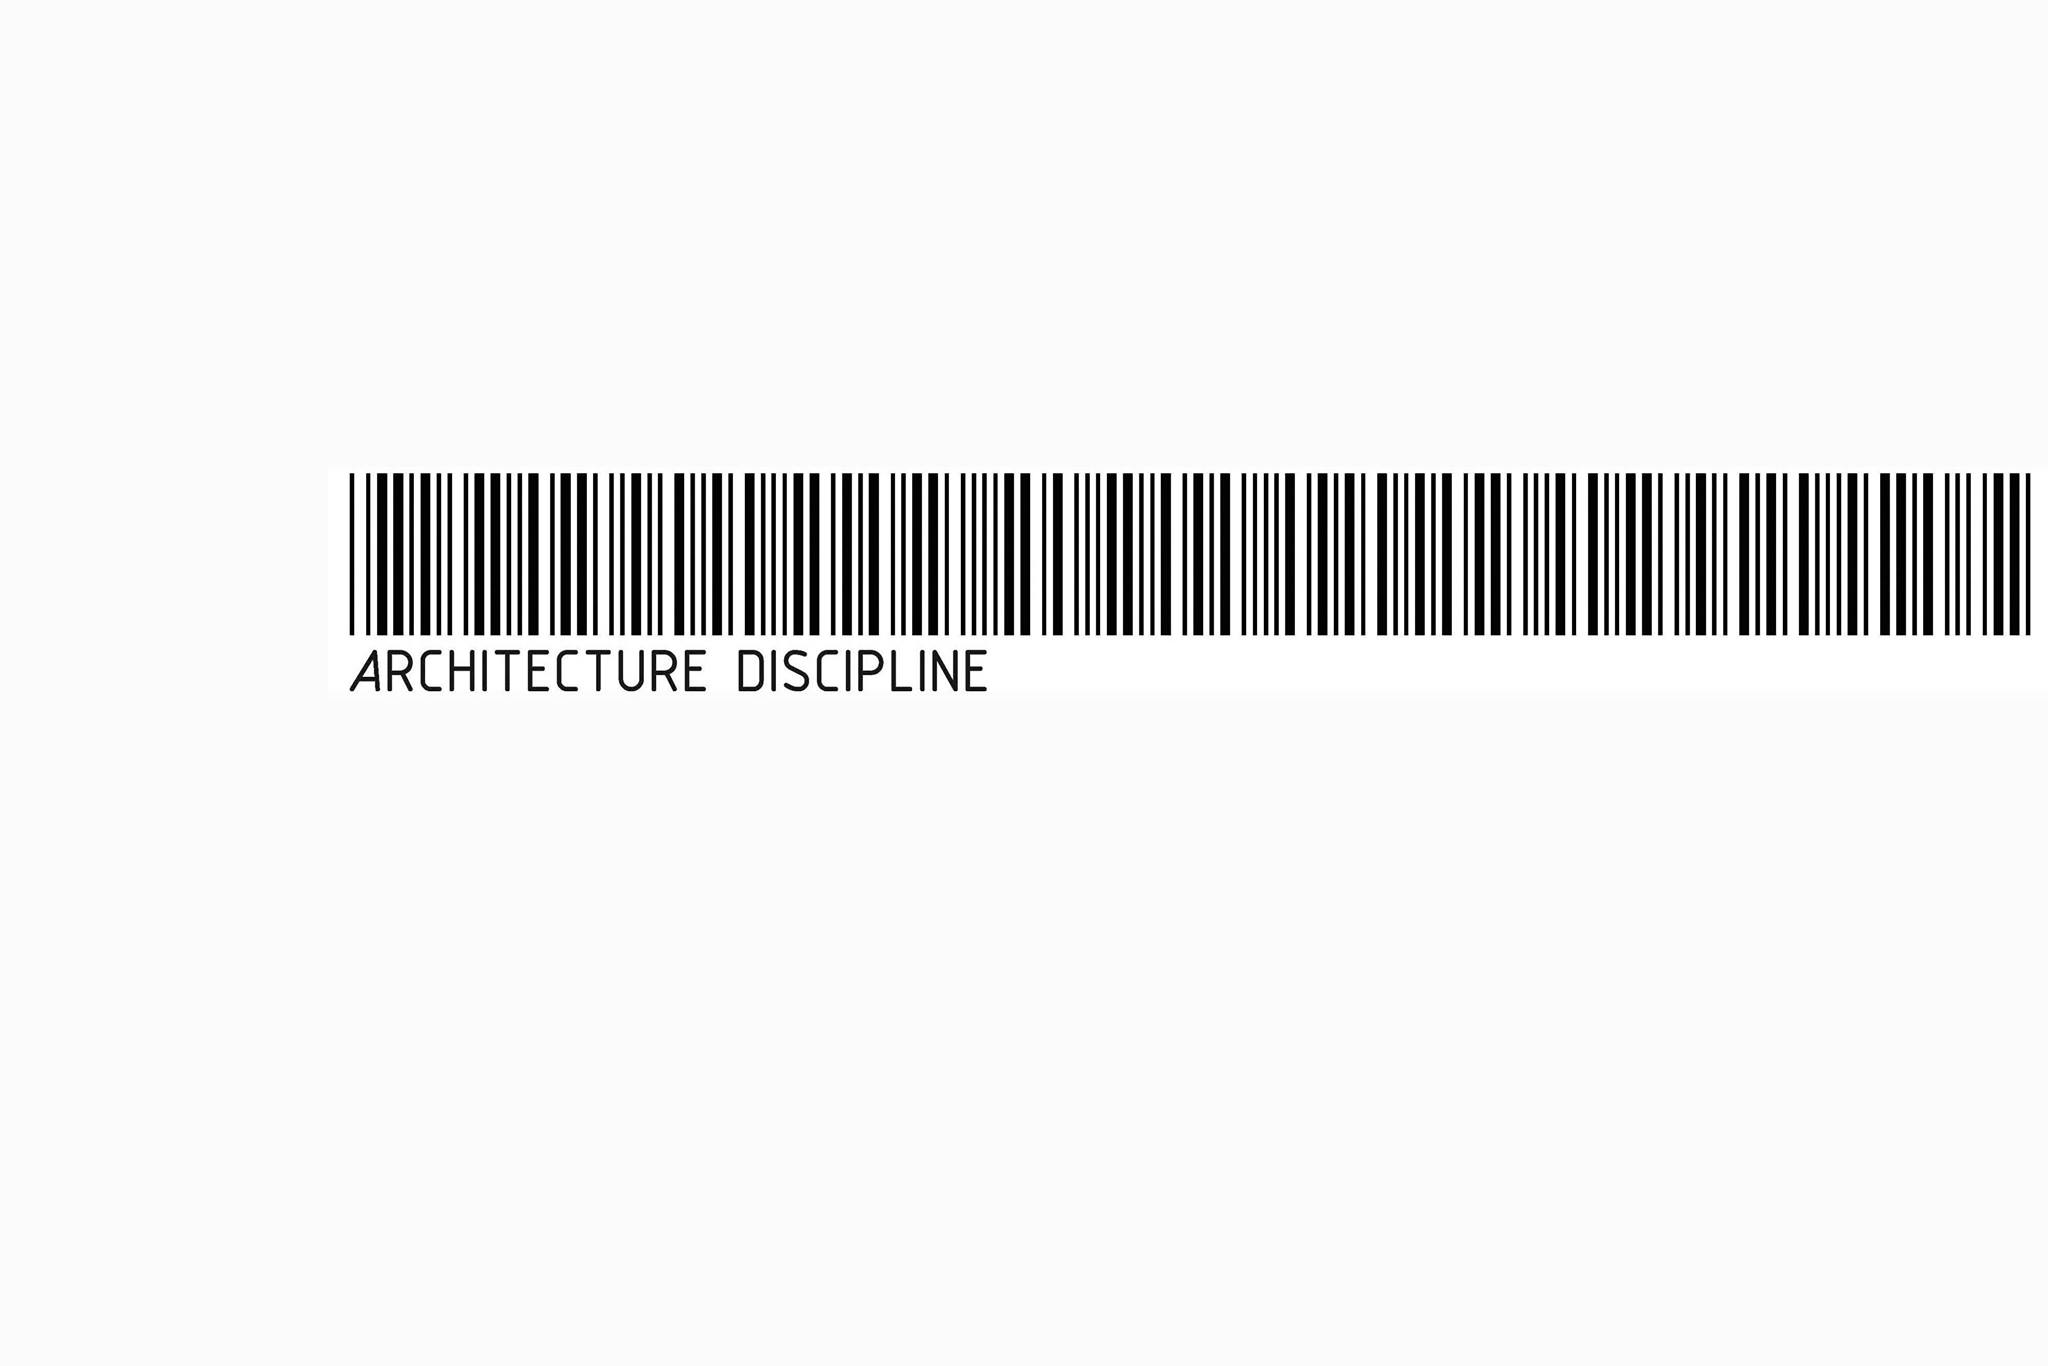 Architecture Discipline|Legal Services|Professional Services